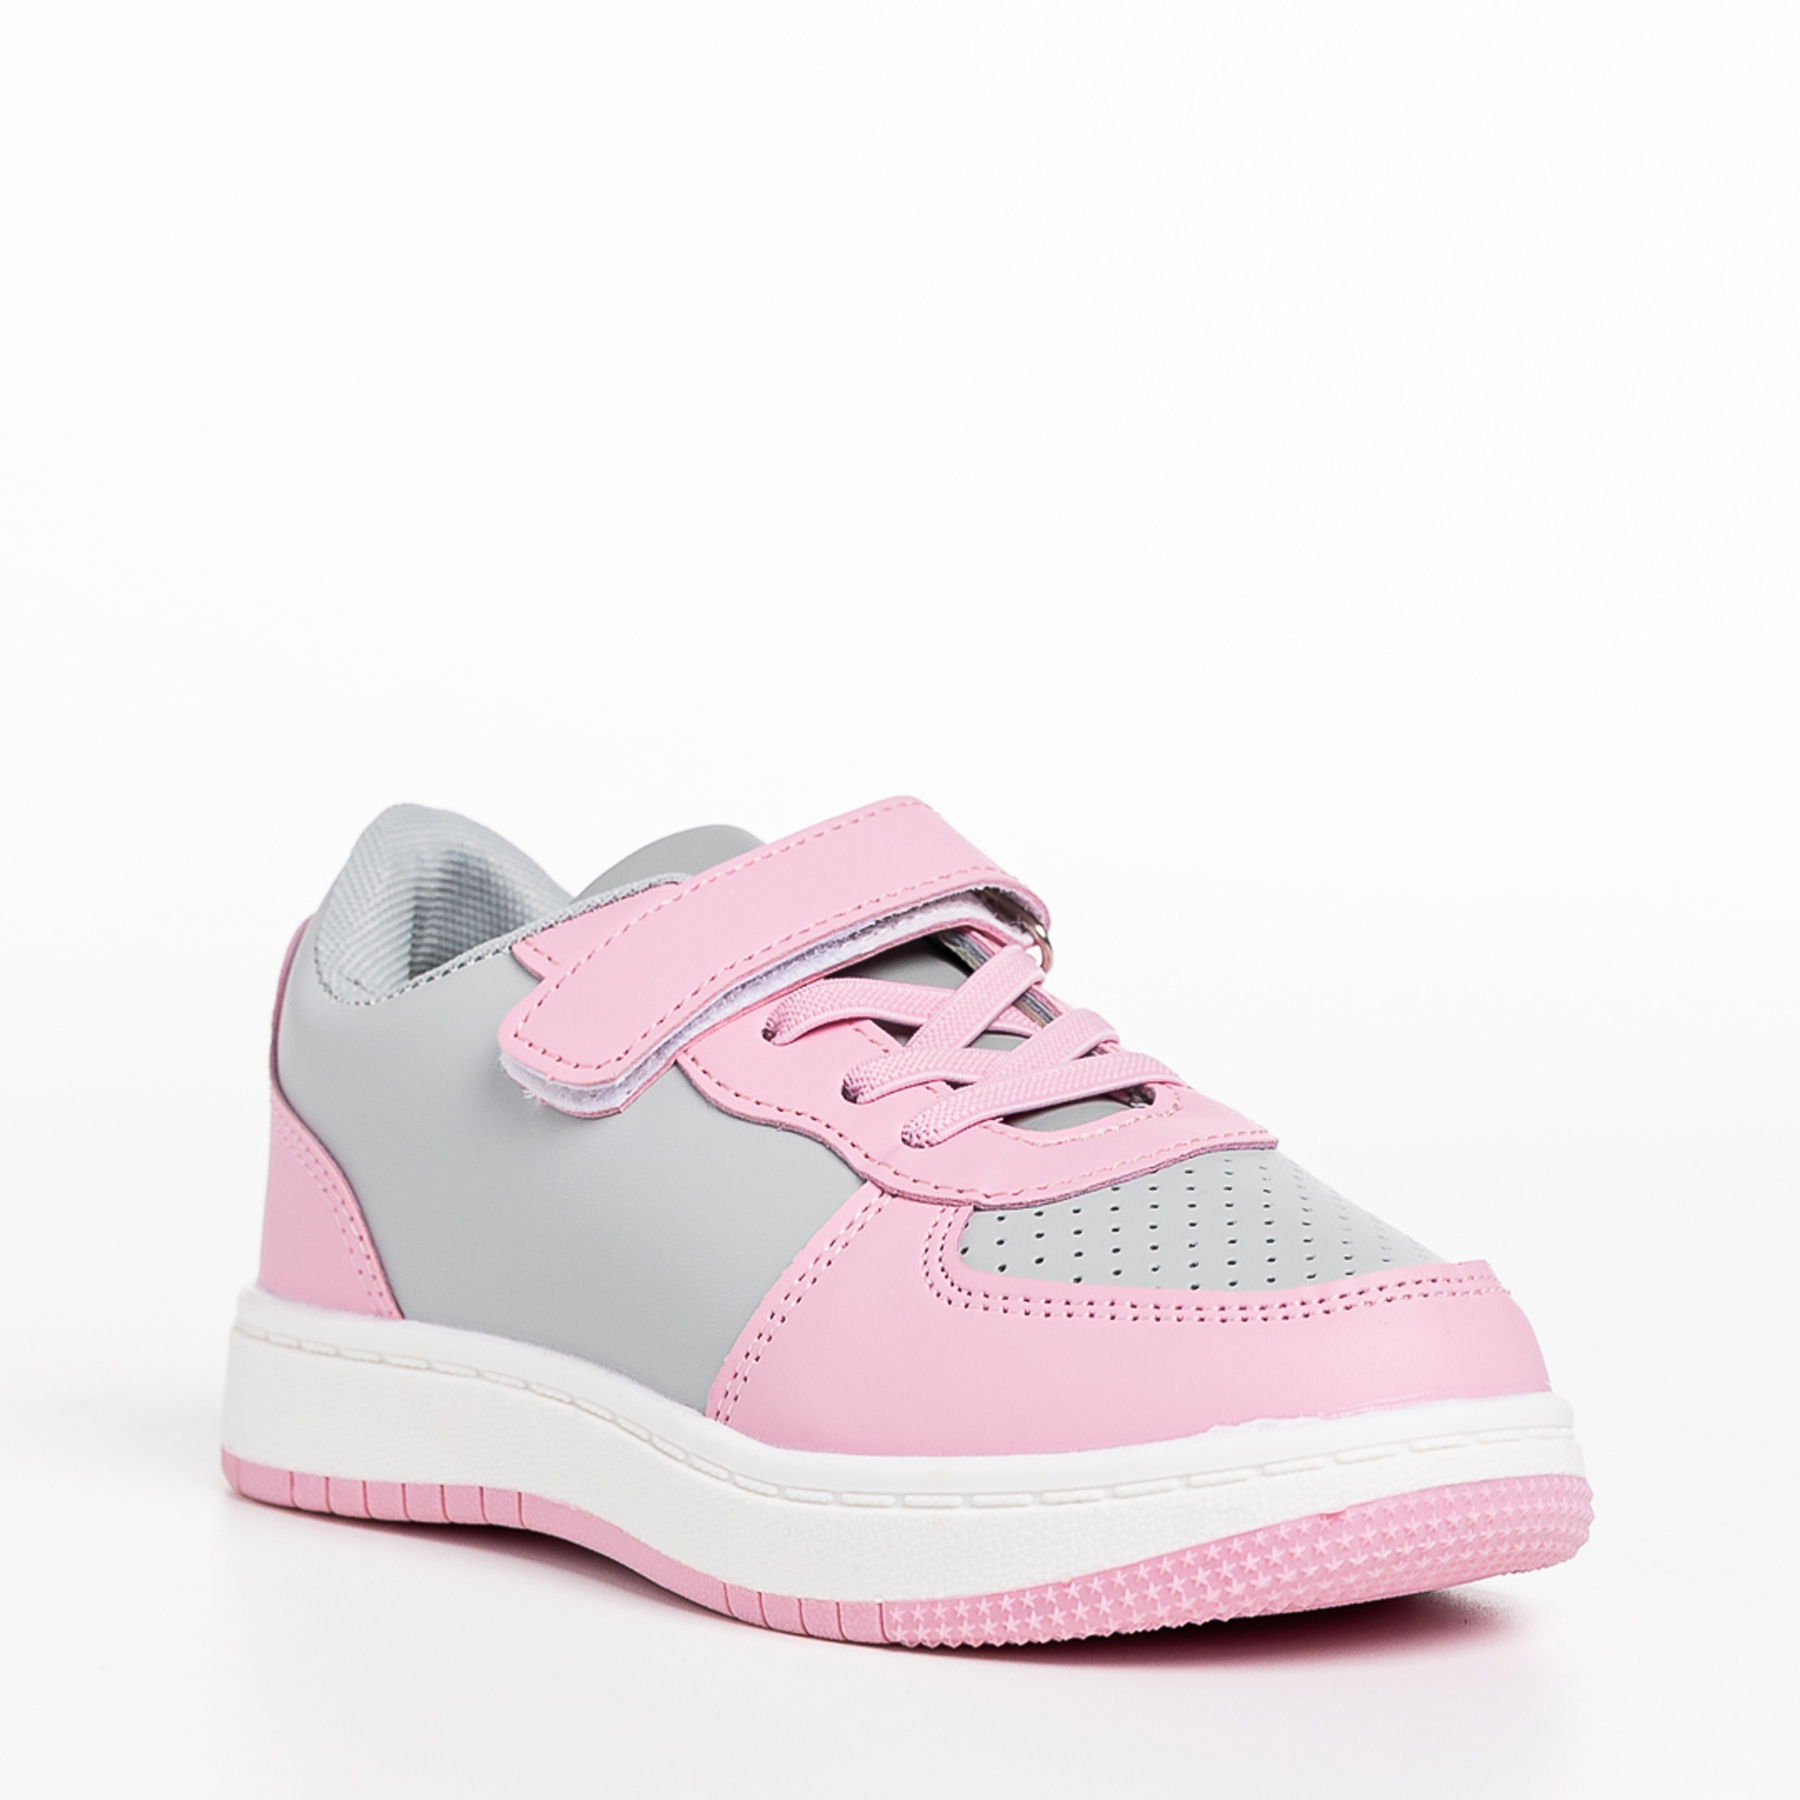 Pantofi sport copii roz cu gri din piele ecologica Ponty